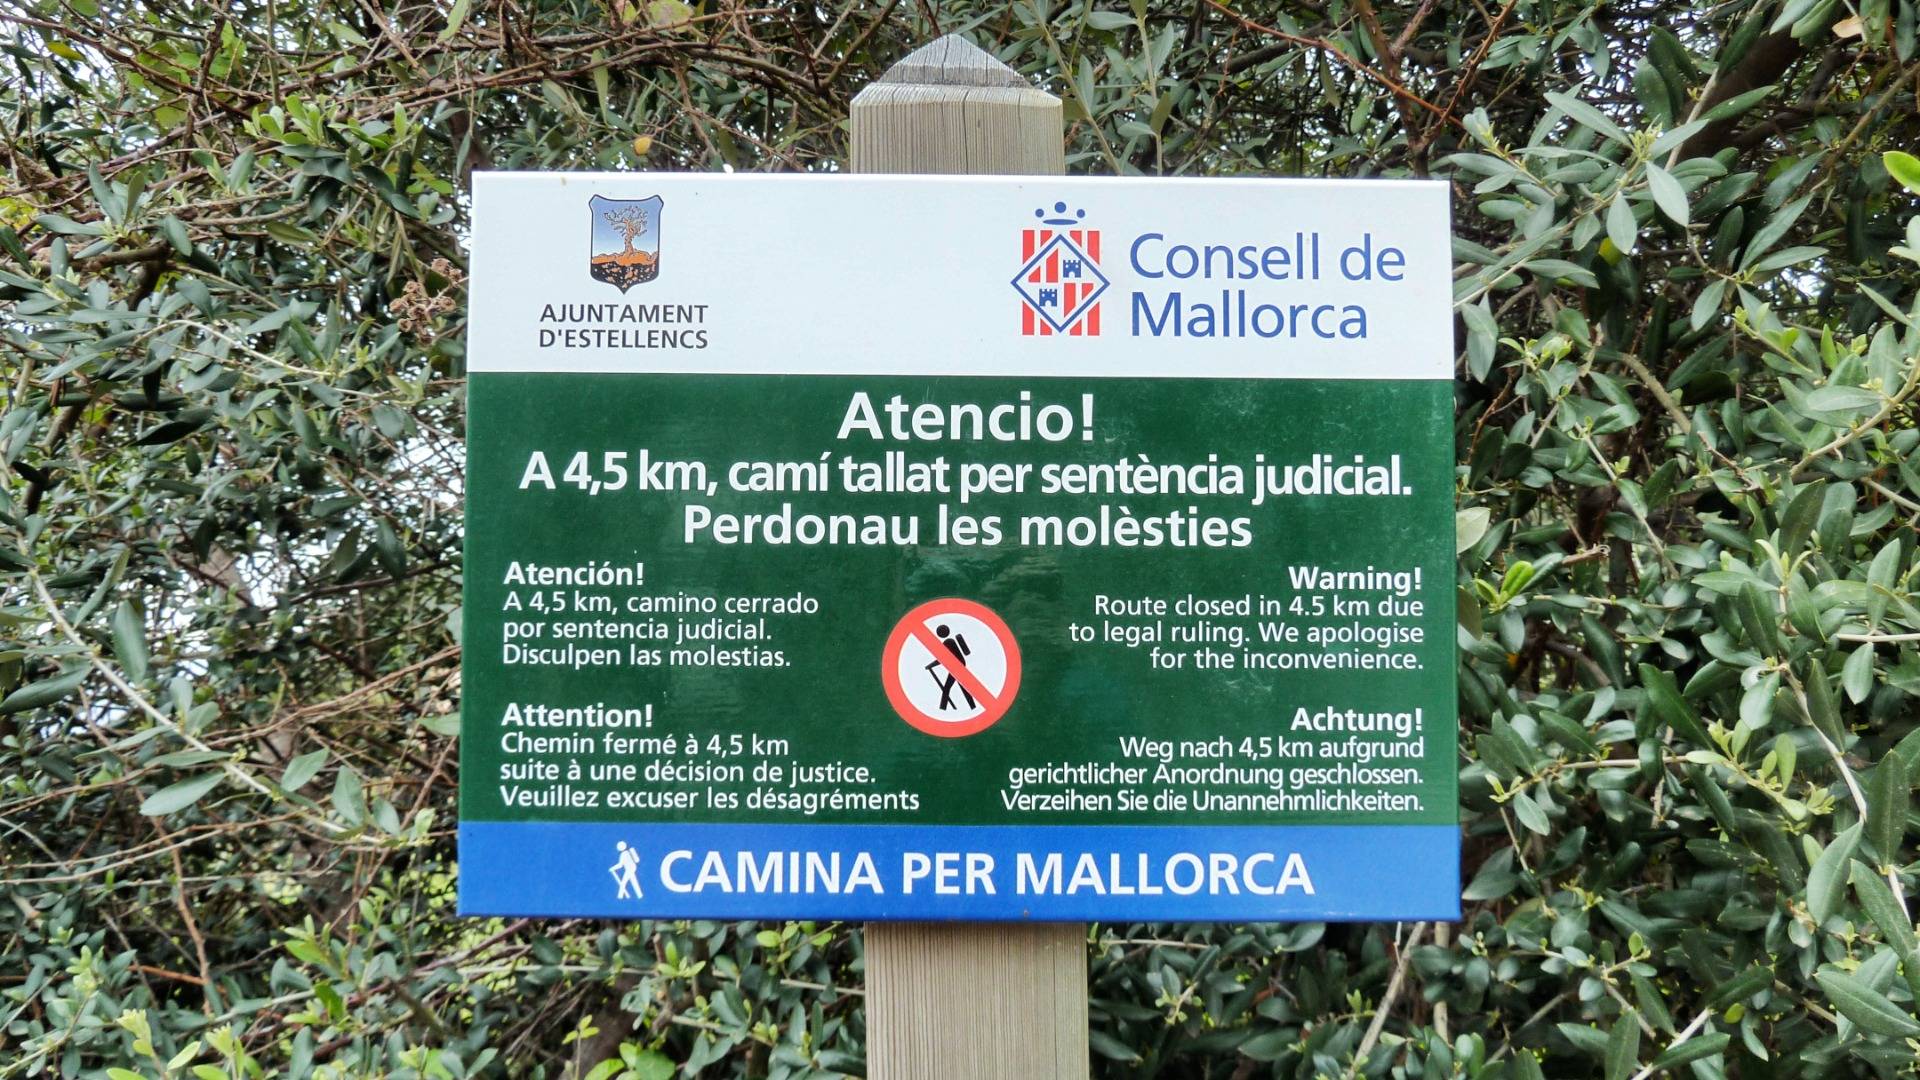 They call it Camina per Mallorca